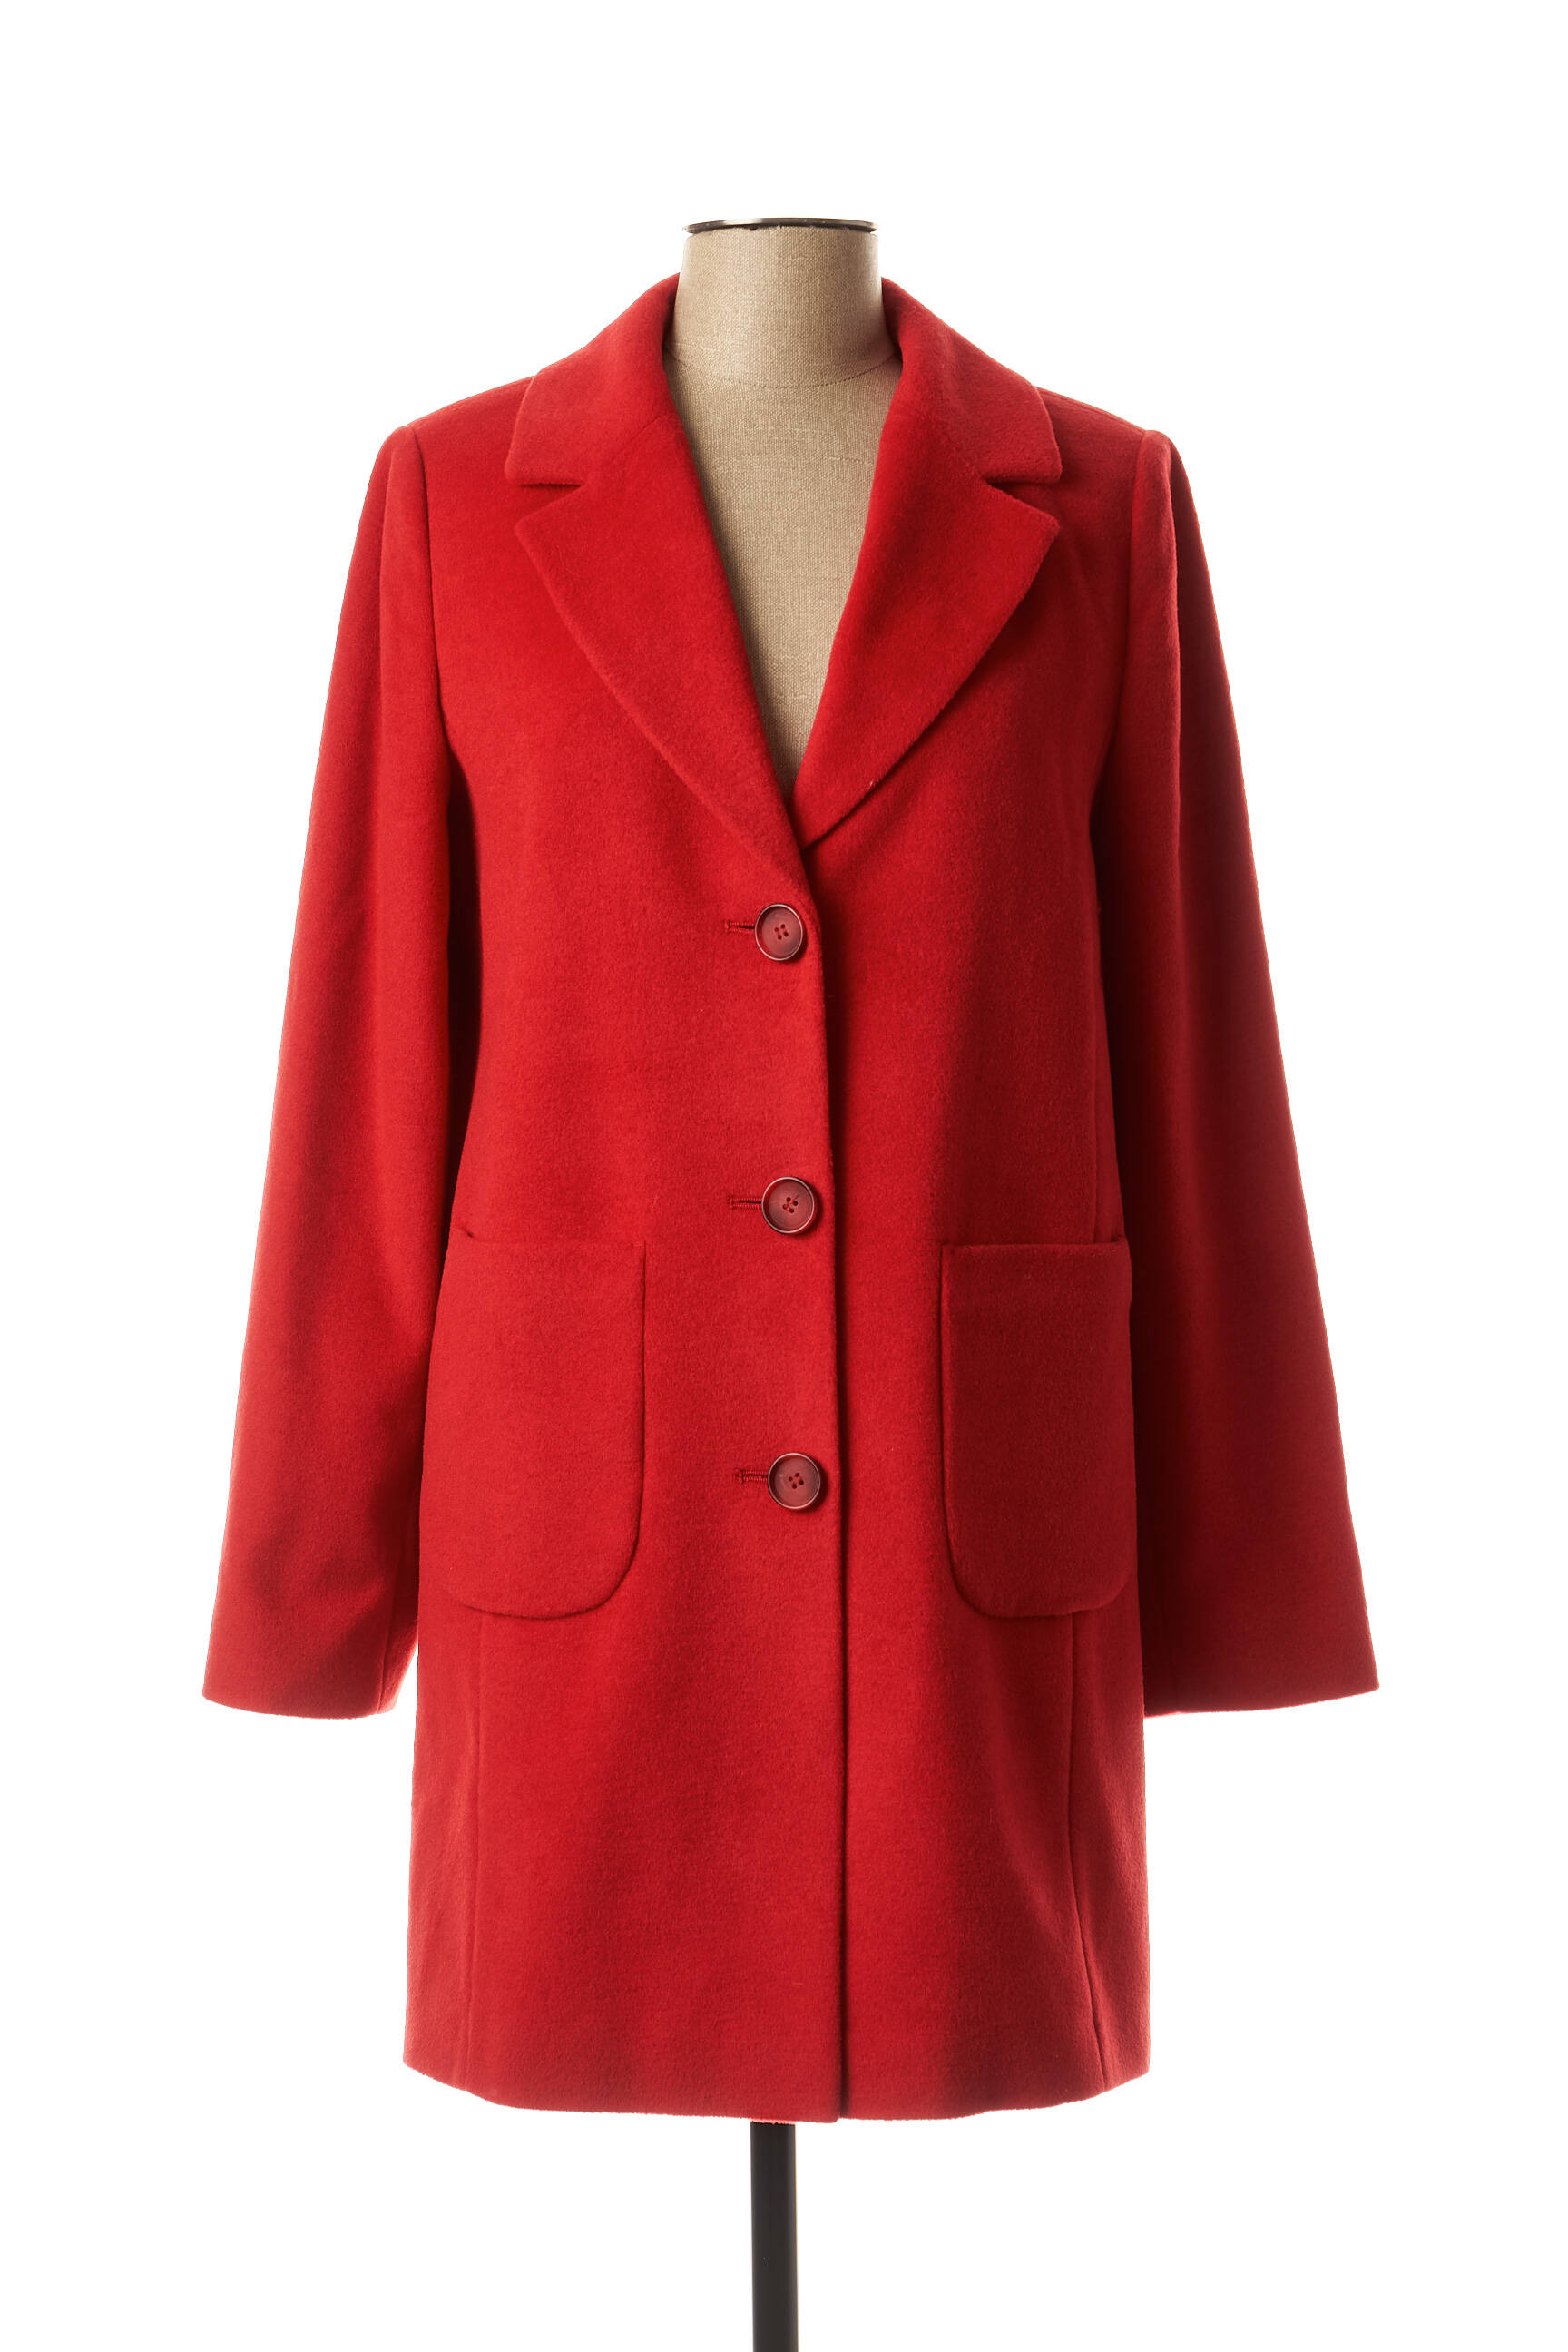 manteau rouge long femme